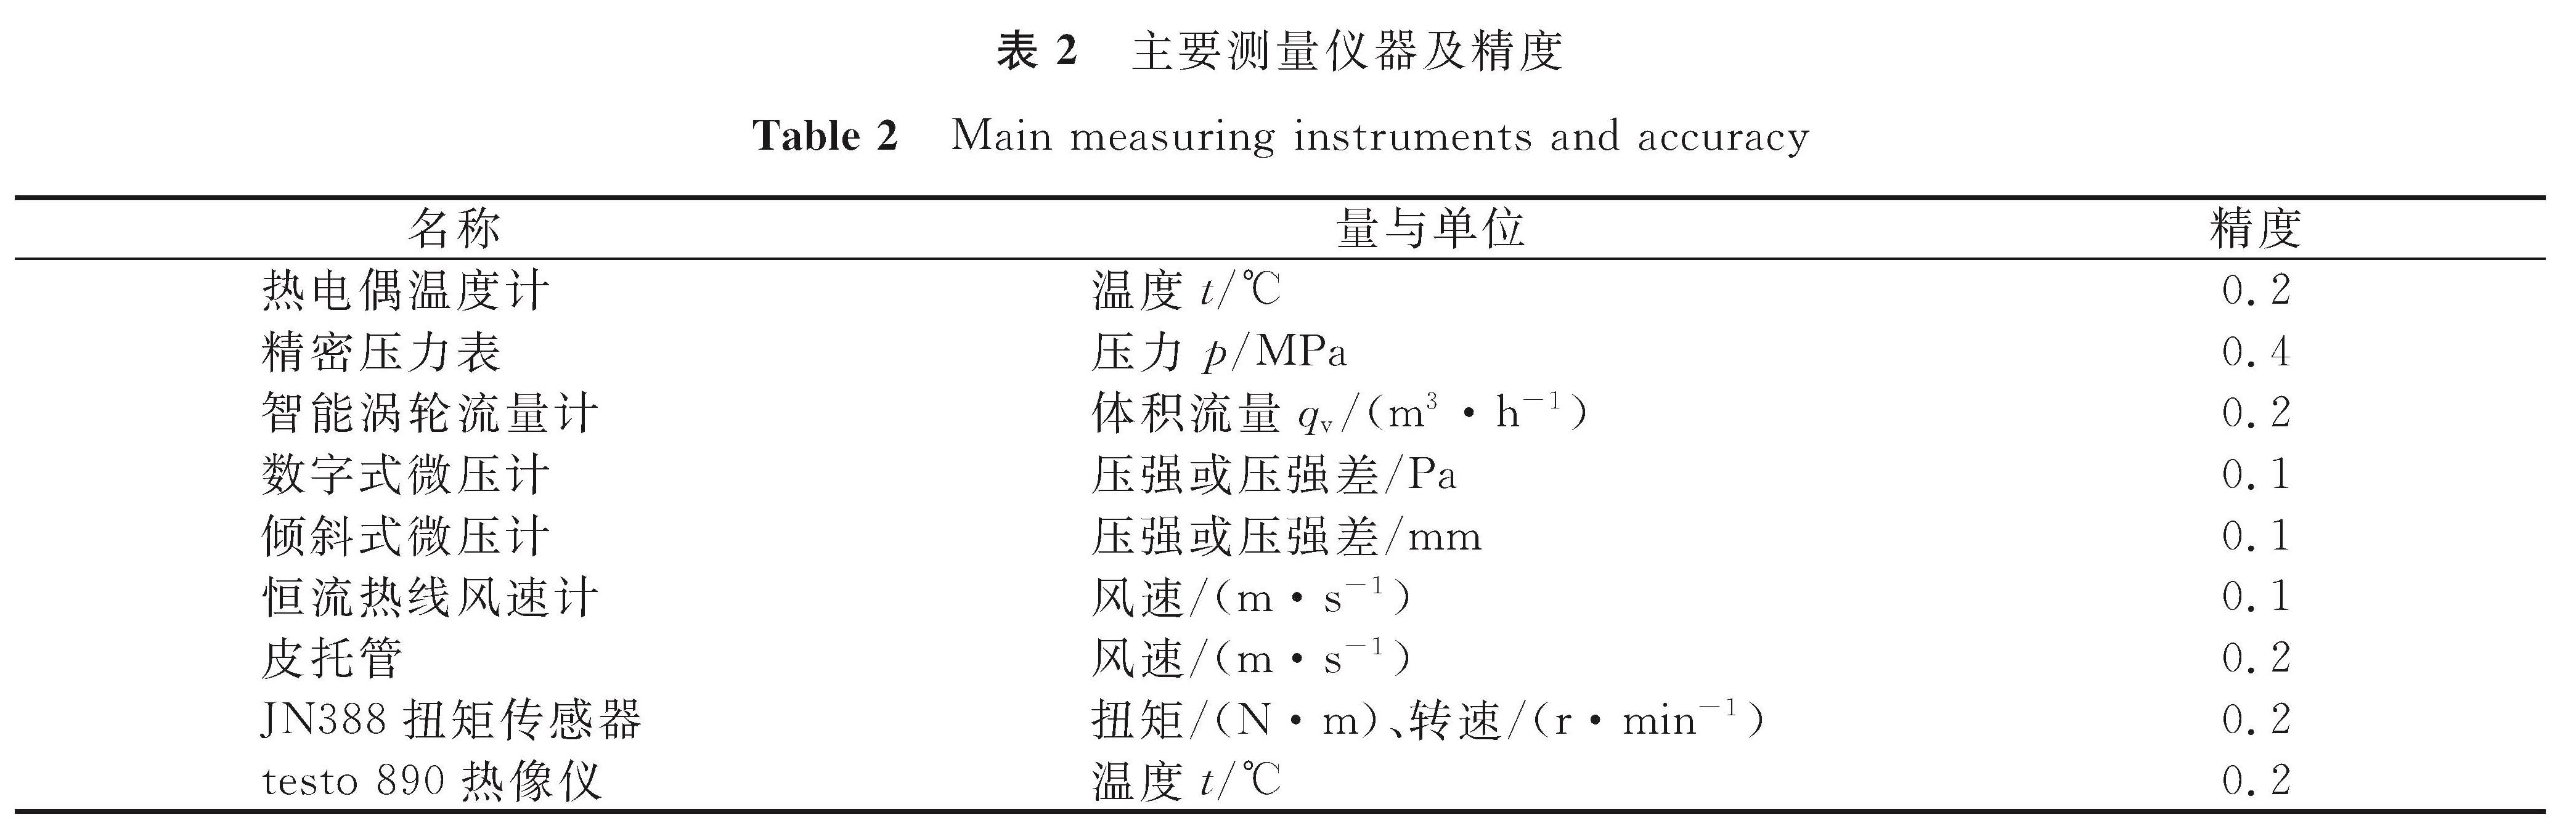 表2 主要测量仪器及精度<br/>Table 2 Main measuring instruments and accuracy